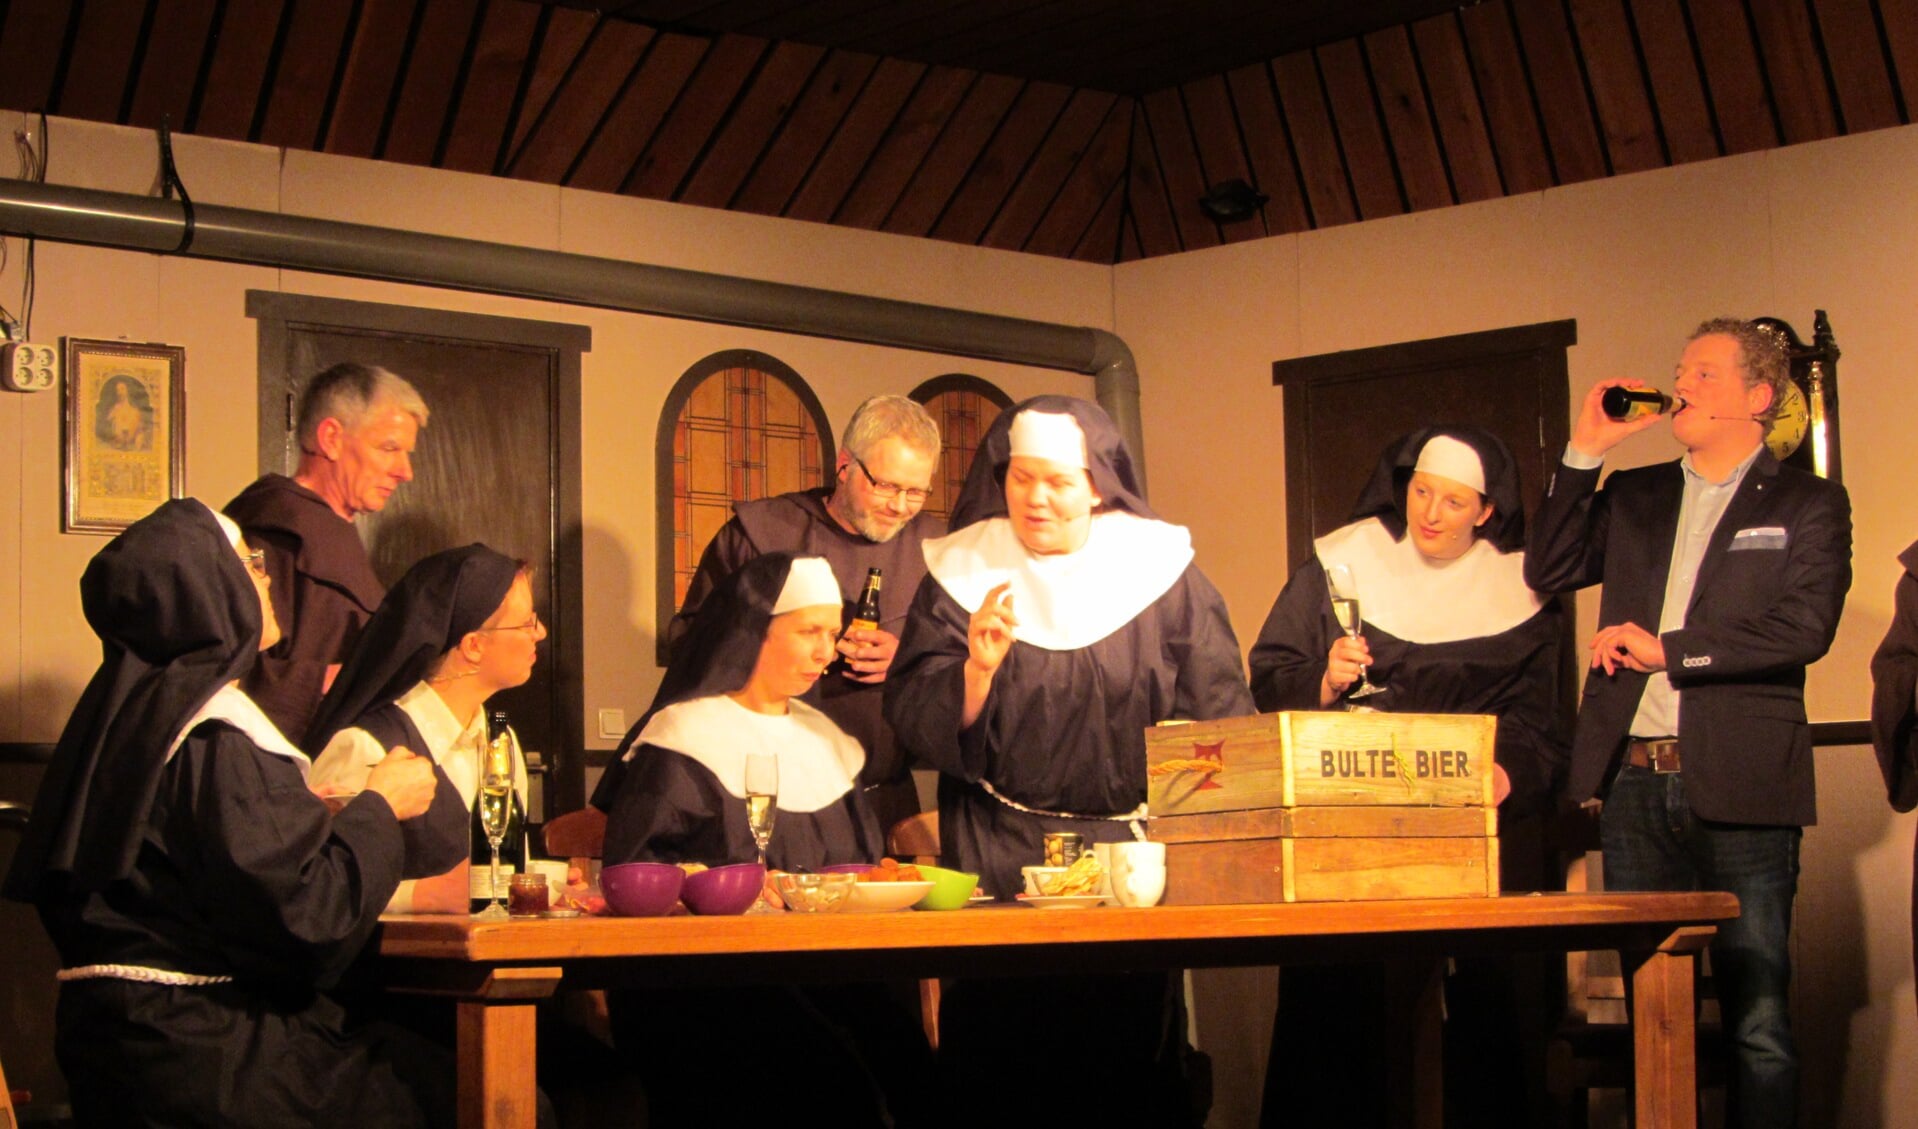 Scène uit het stuk 'Broeders bij de nonnen, waar zijn we aan begonnen' uit 2015. 